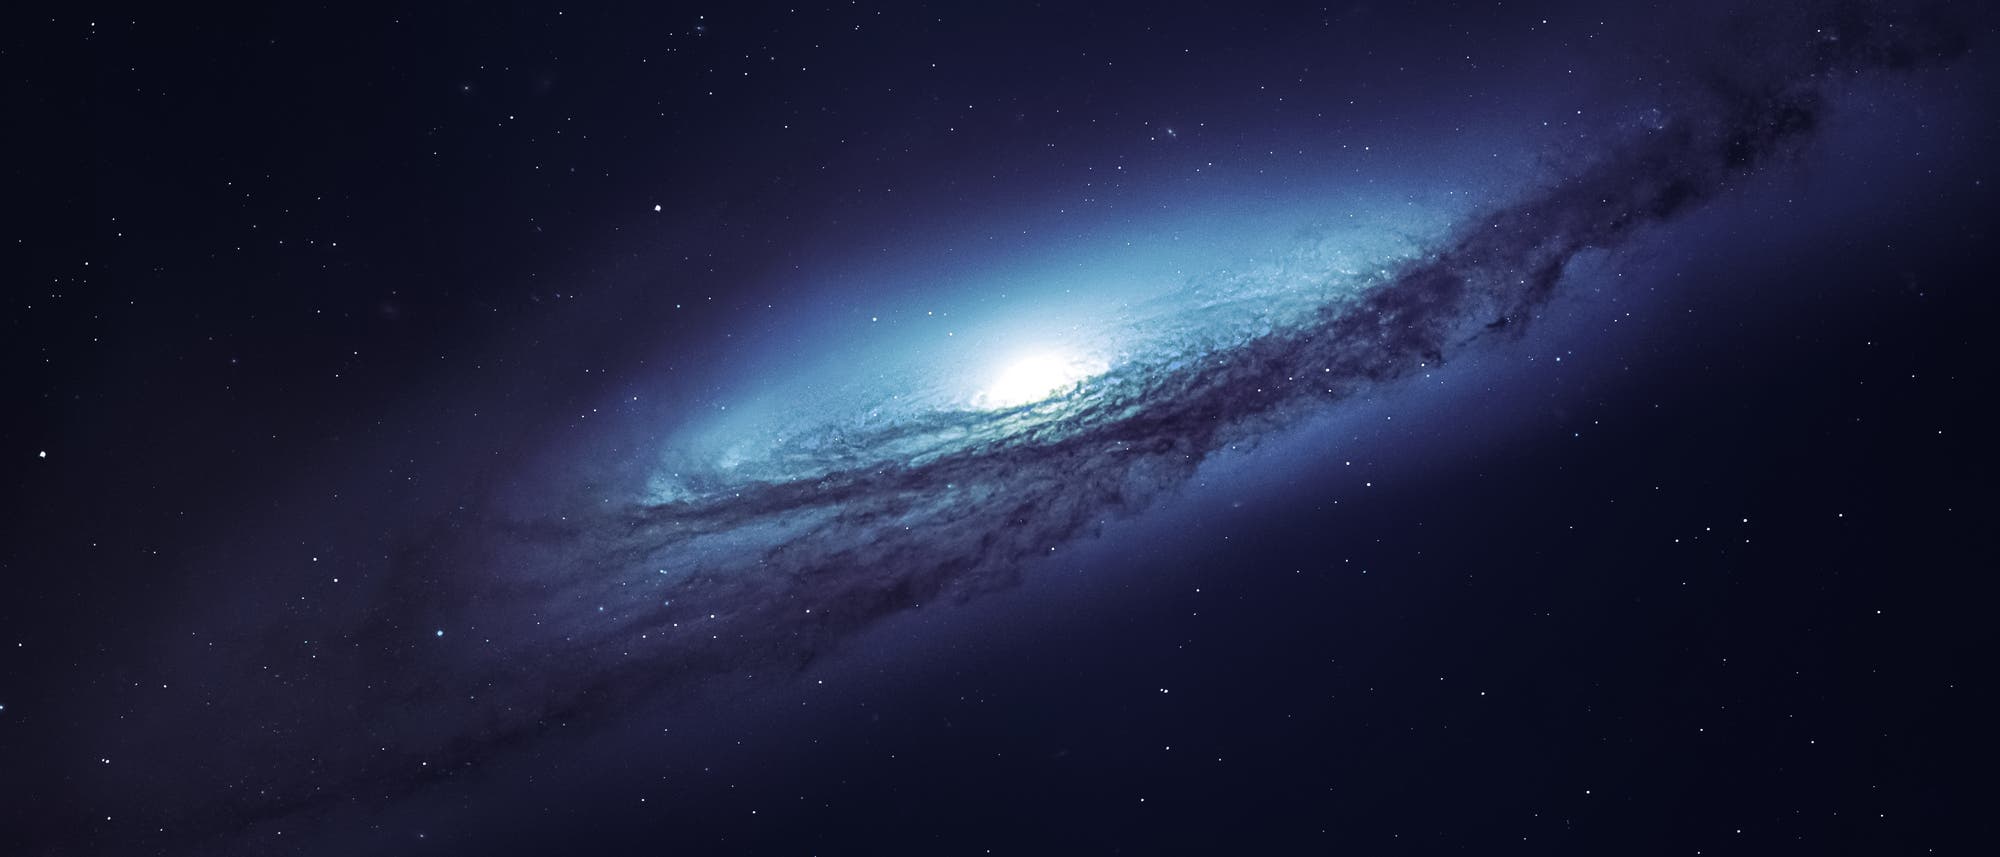 Spiralgalaxie (künstlerische Darstellung nach NASA-Motiven)